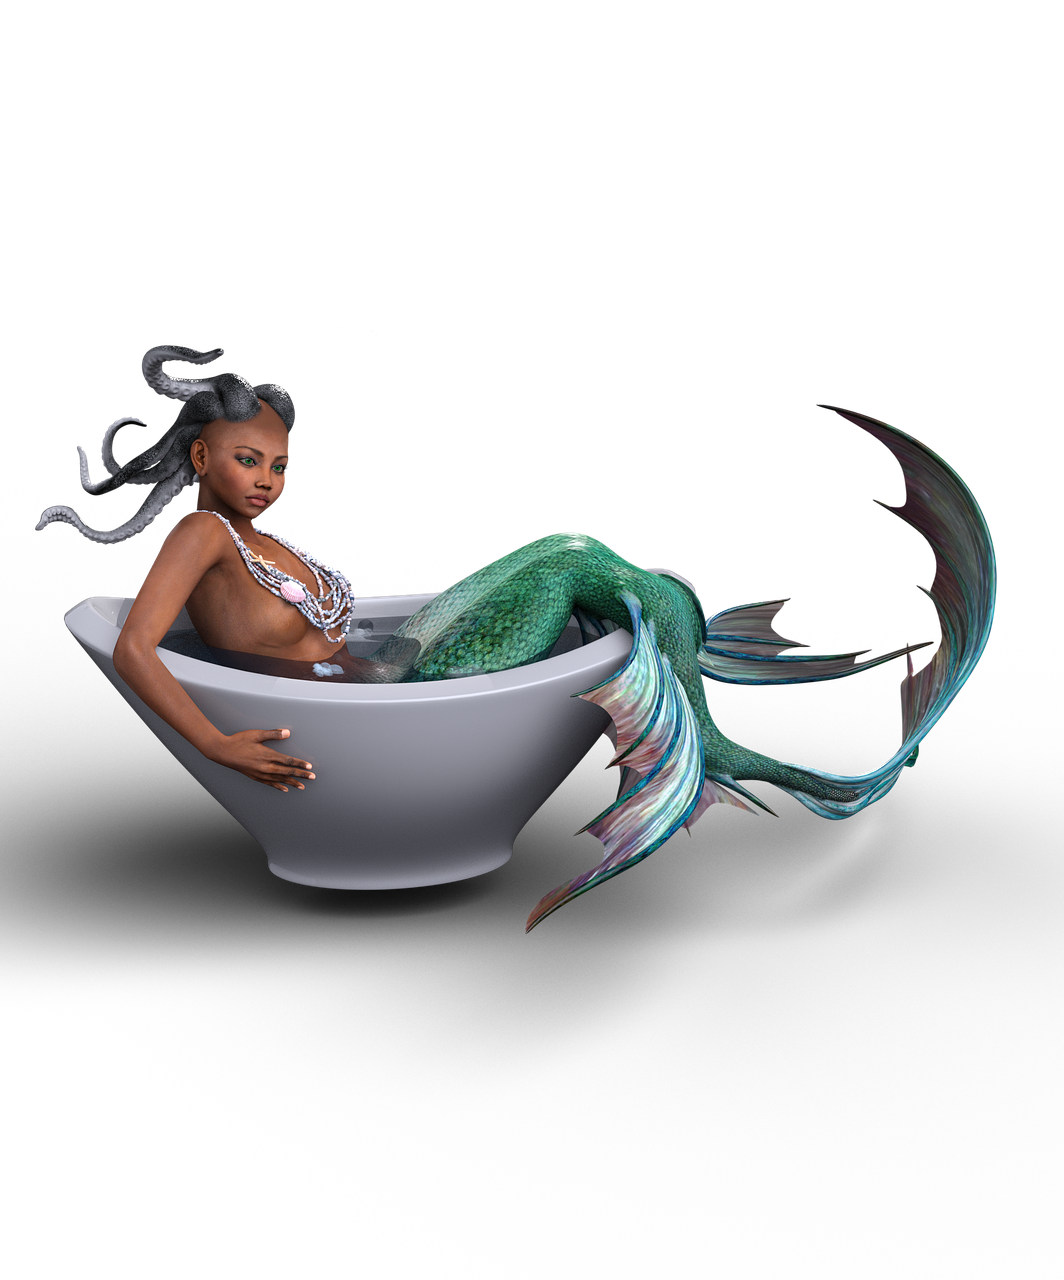  How Do Mermaids Use The Bathroom 